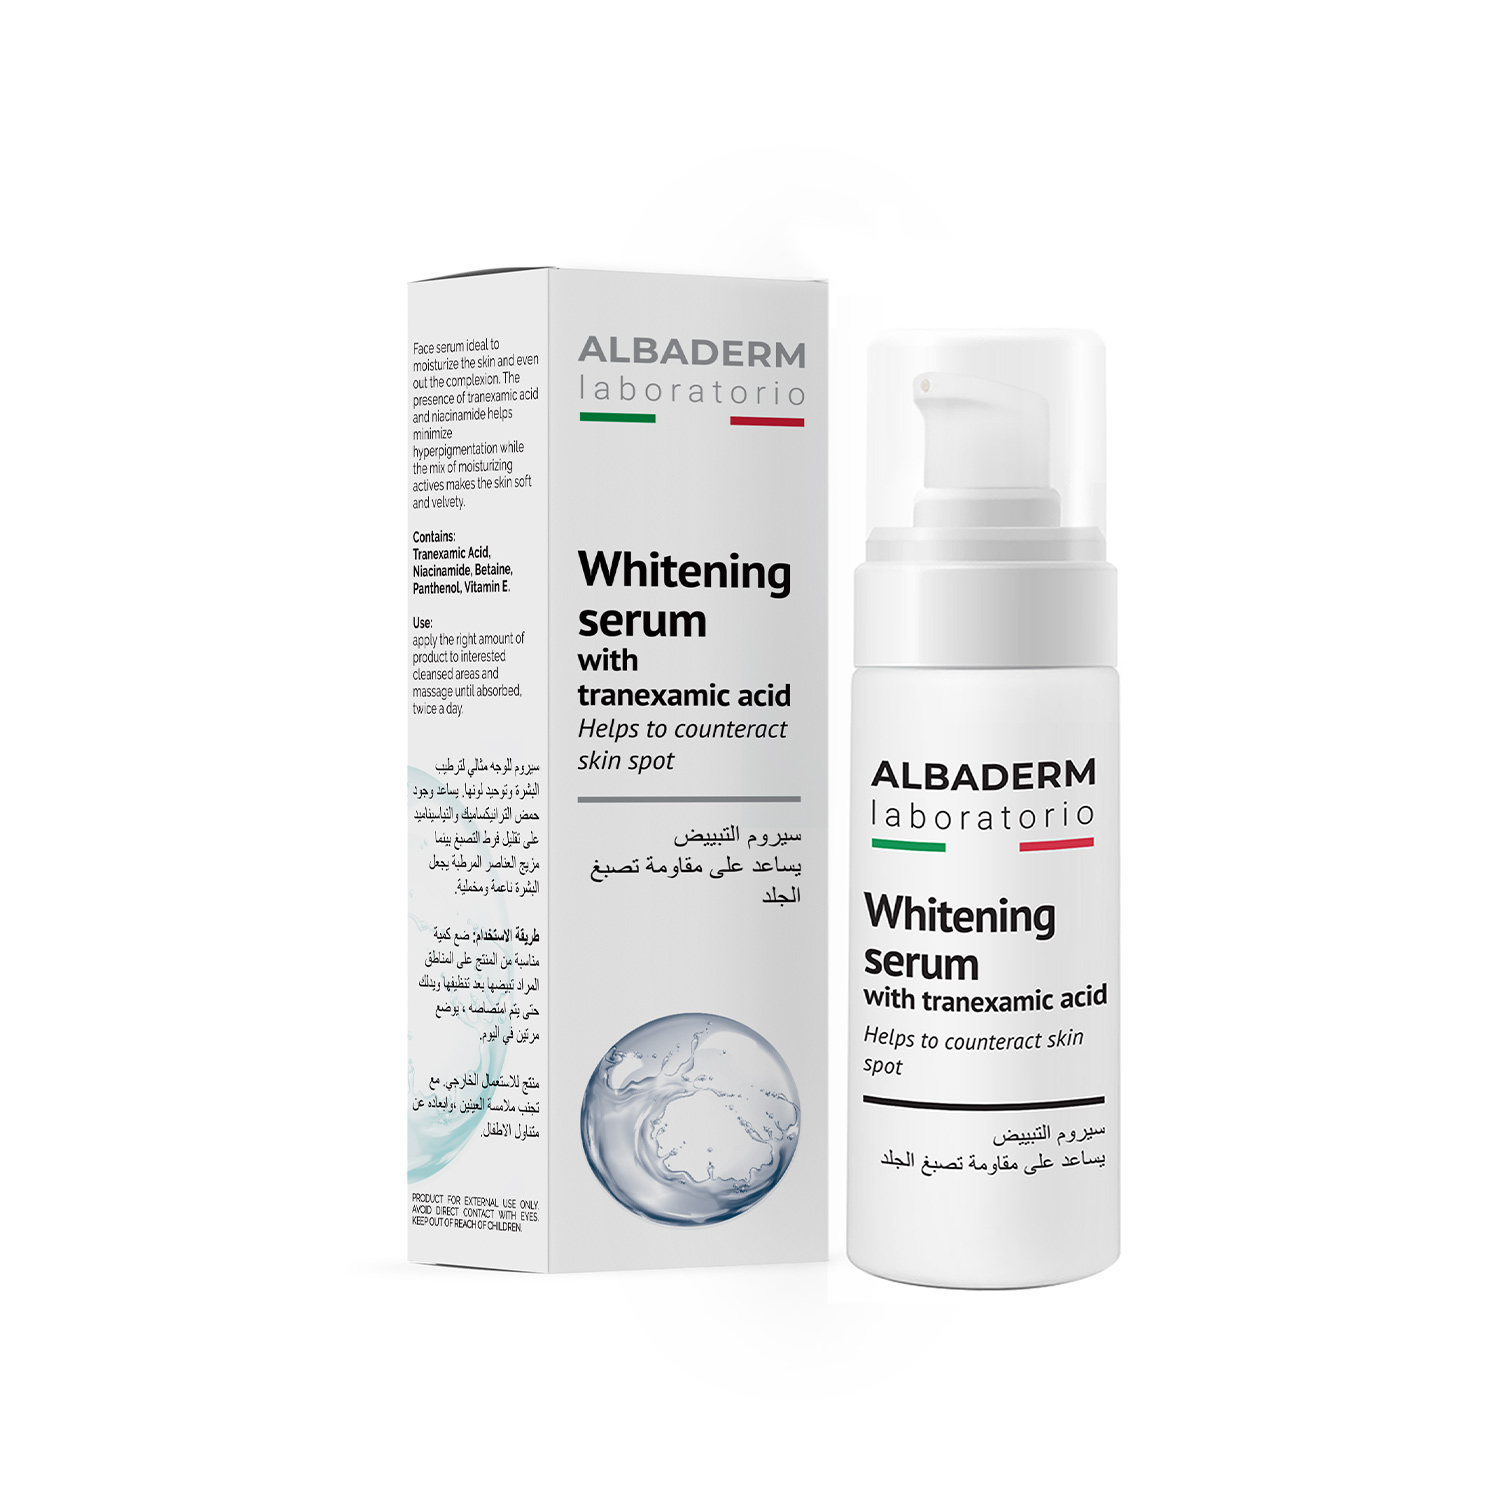 Whitening serum with tranexamic acid